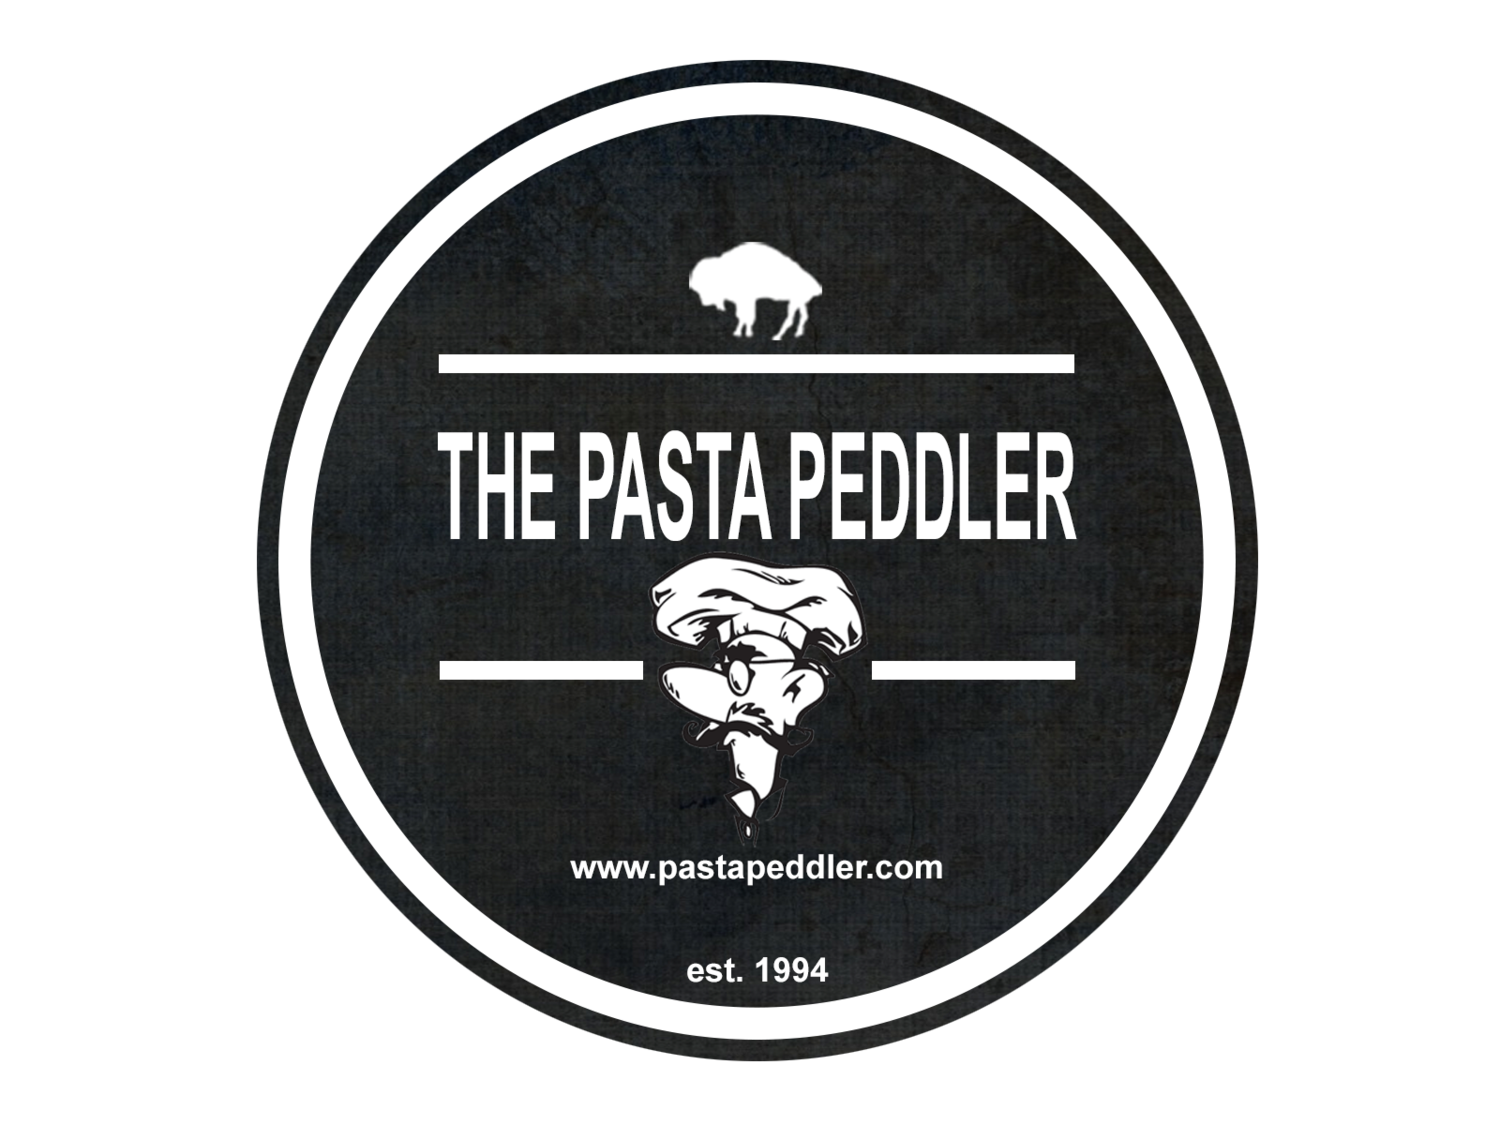 The Pasta Peddler